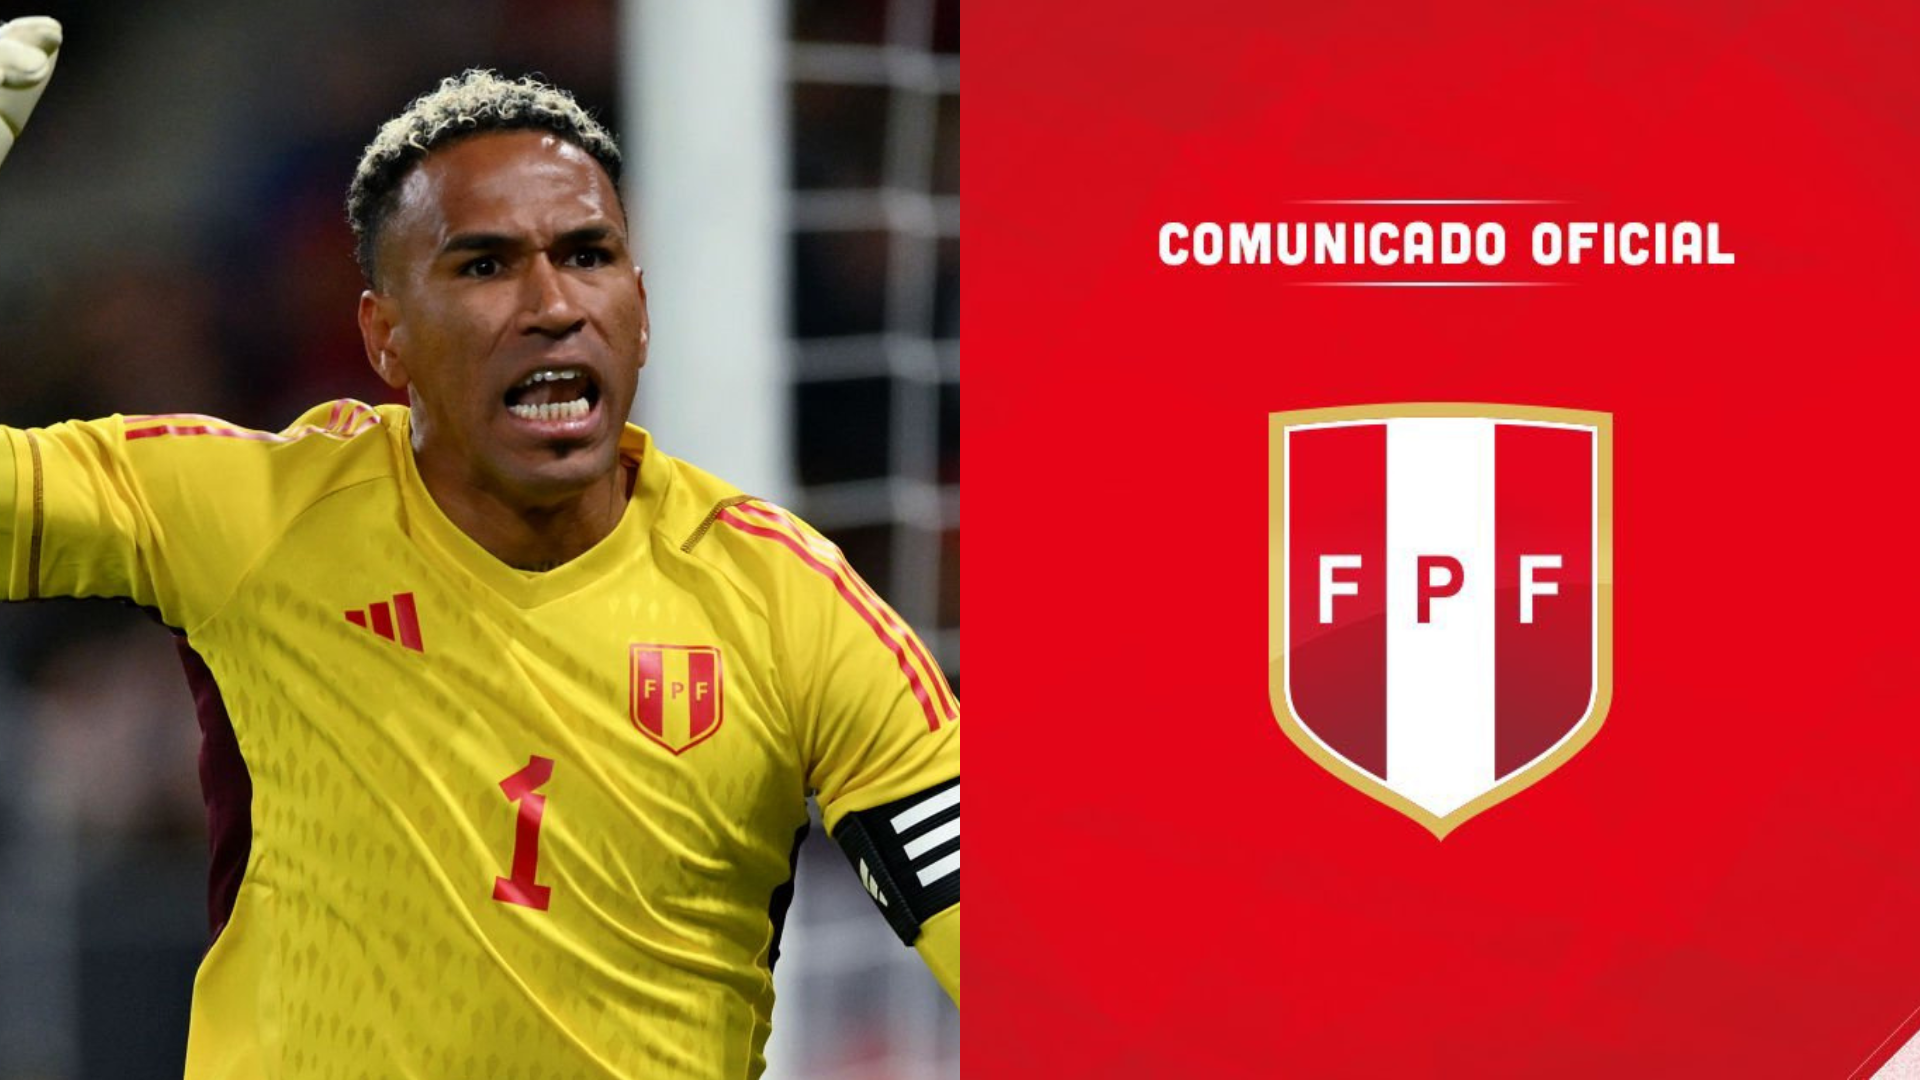 El contundente comunicado de la Federación Peruana de Fútbol tras pelea entre jugadores y policías españoles